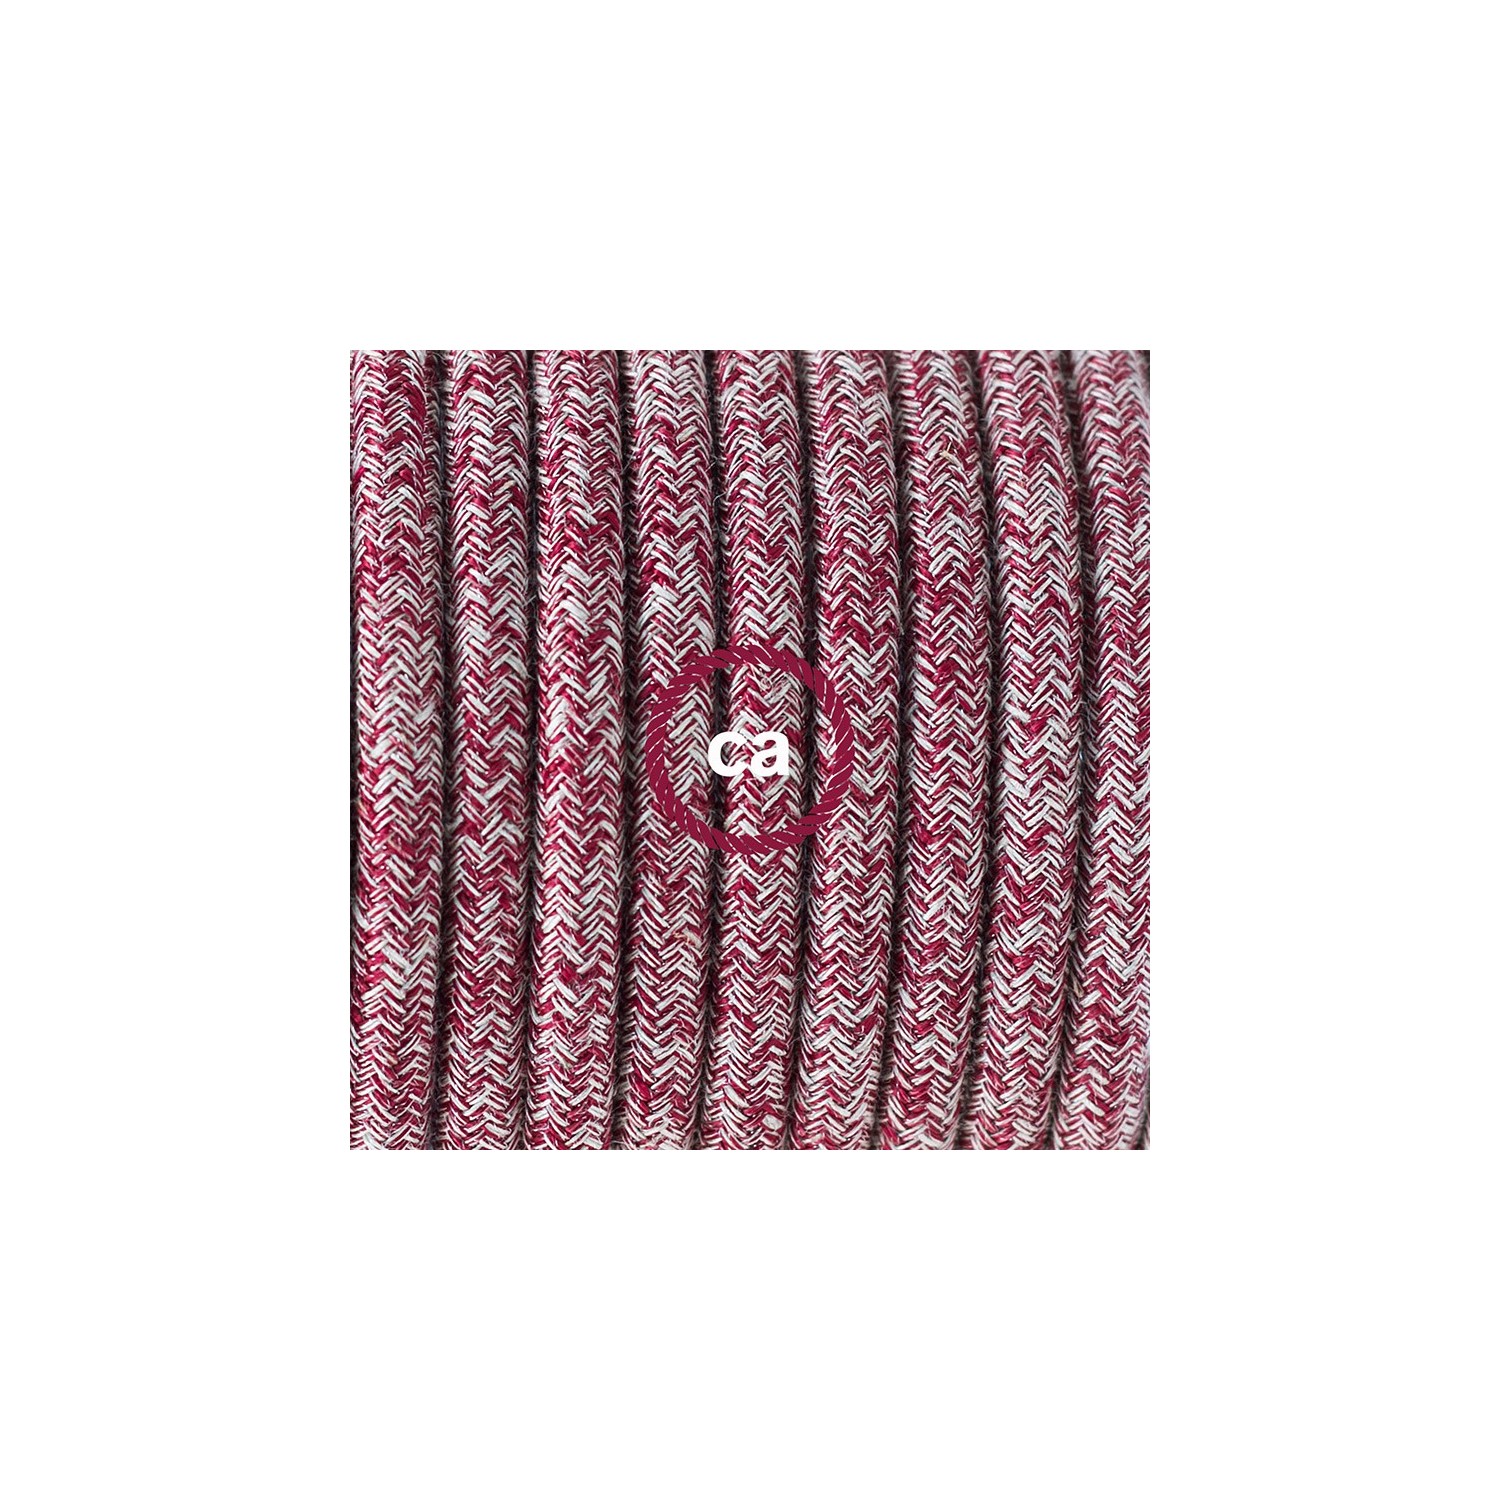 Ronde flexibele textielkabel van katoen met schakelaar en stekker. RS83 - tweed rood burgundy linnen and glitter 1,80 m.